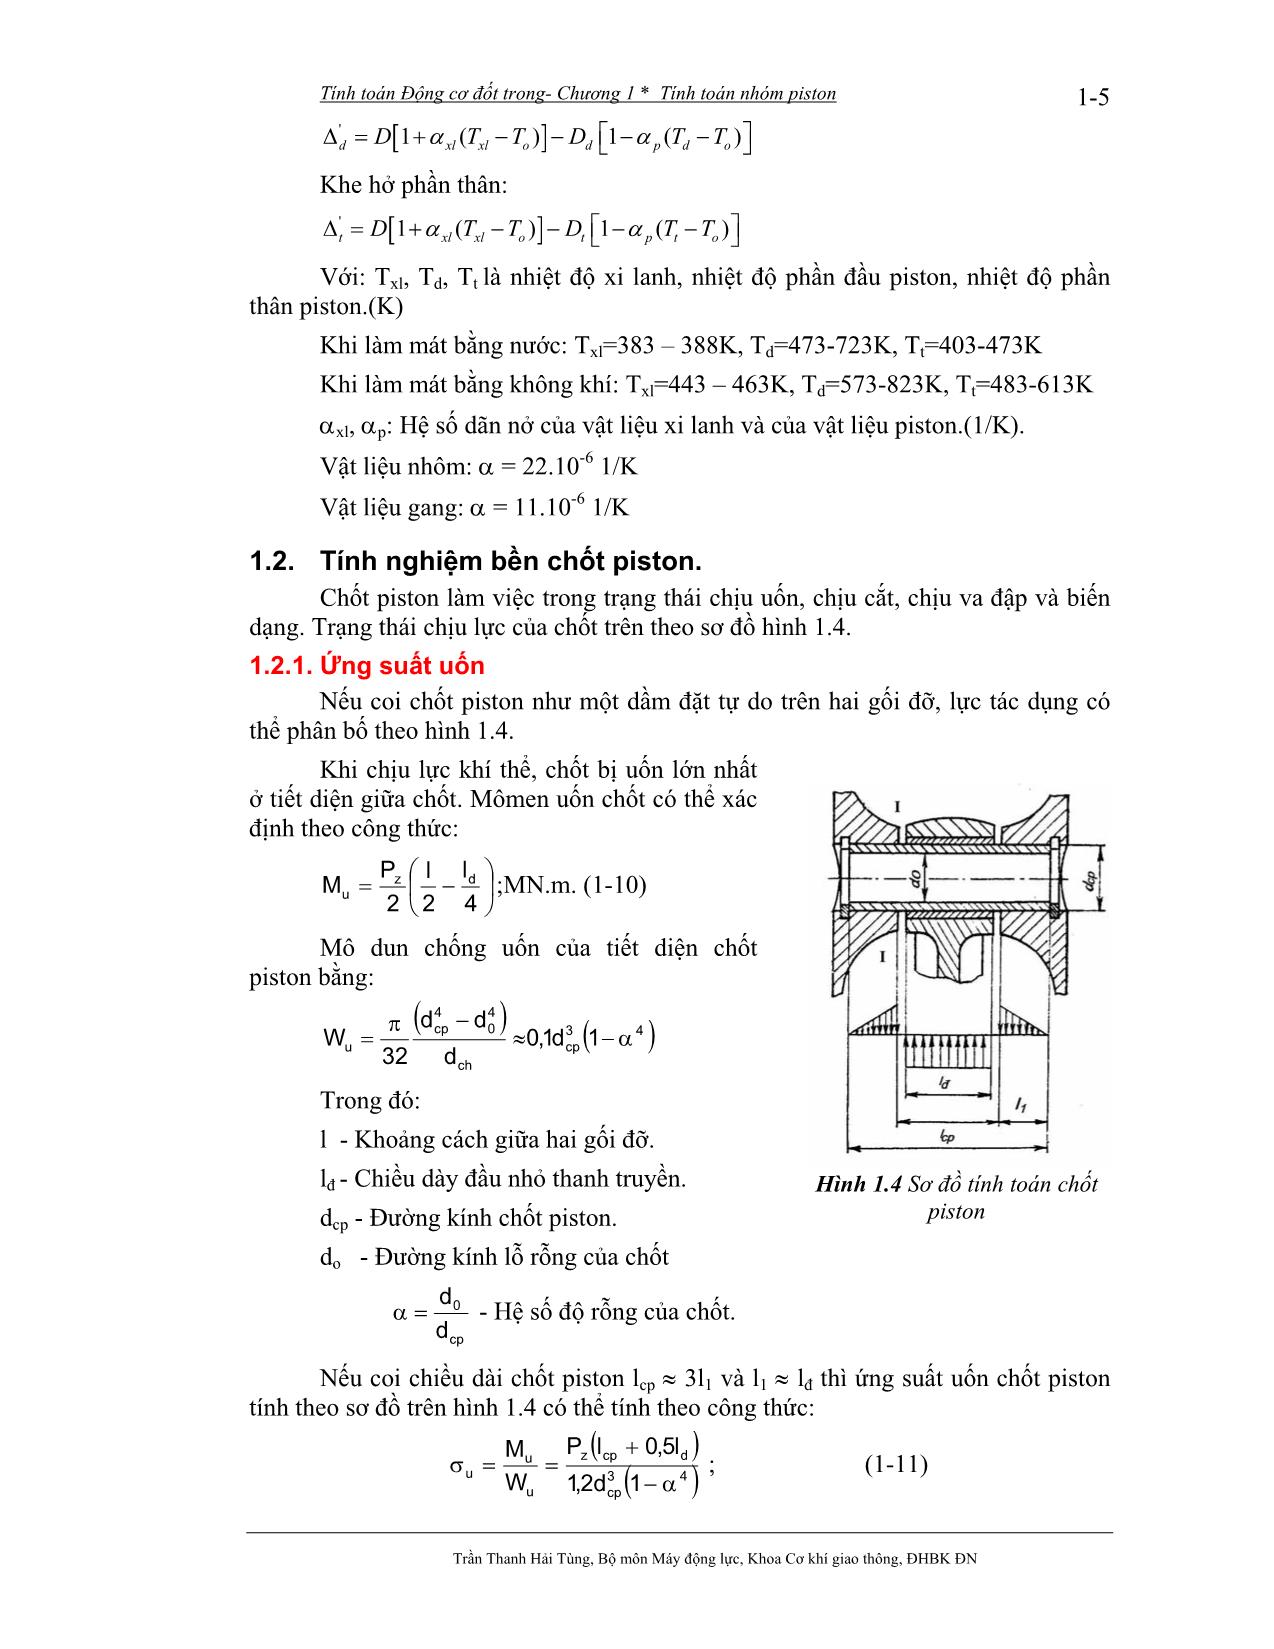 Bài giảng Tính toán thiết kế động cơ đốt trong - Trần Thanh Hải Tùng trang 6